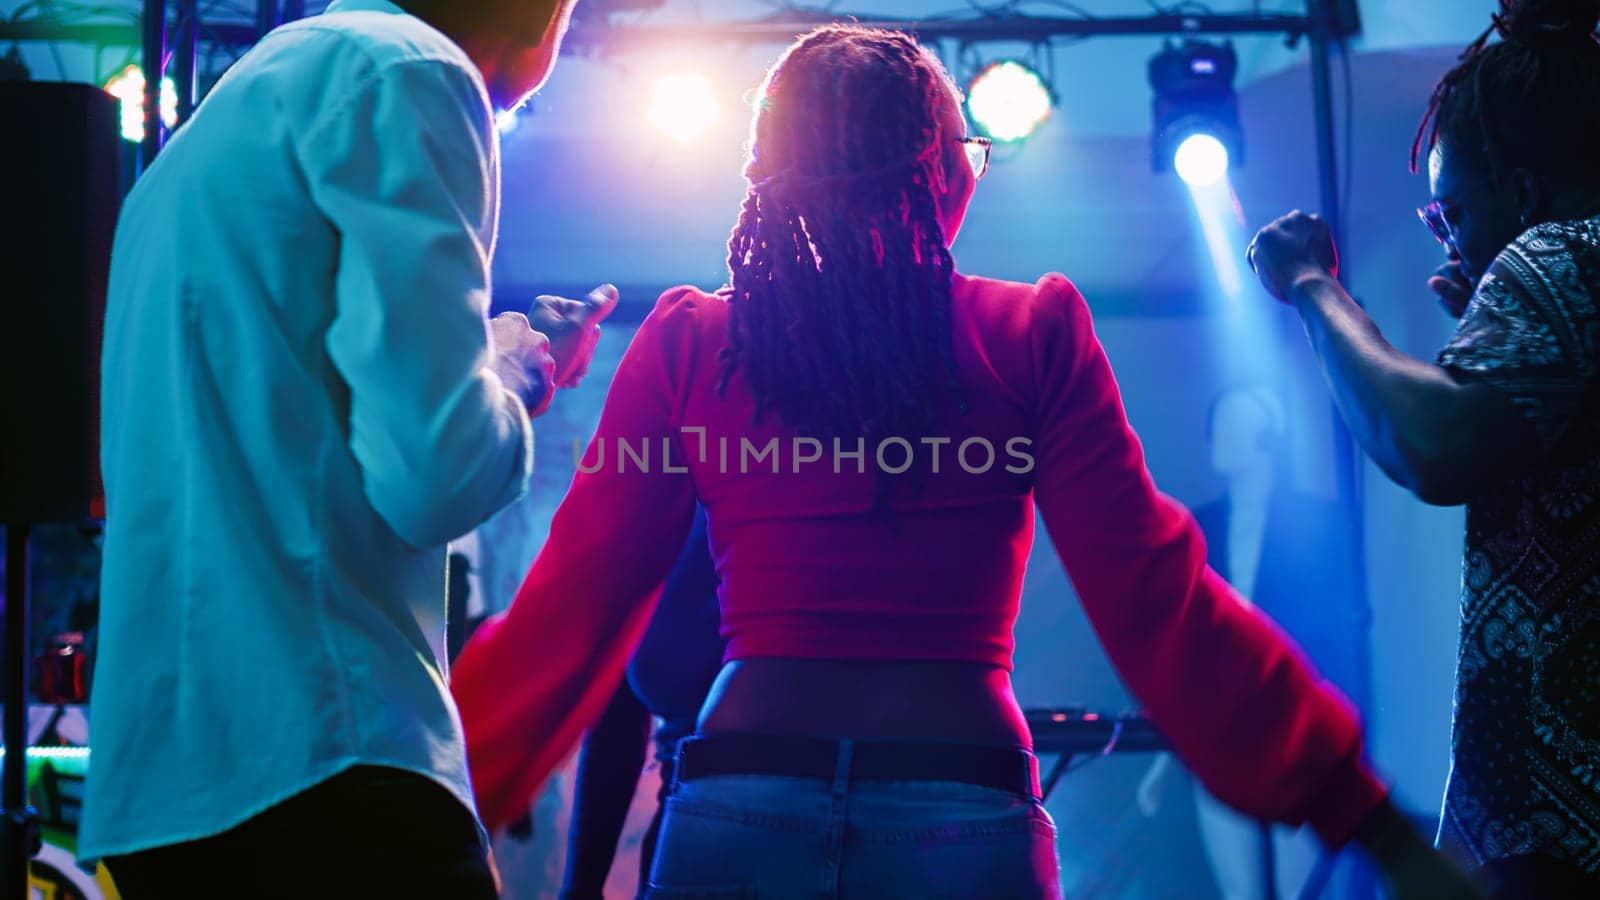 Men and women dancing at nightclub by DCStudio